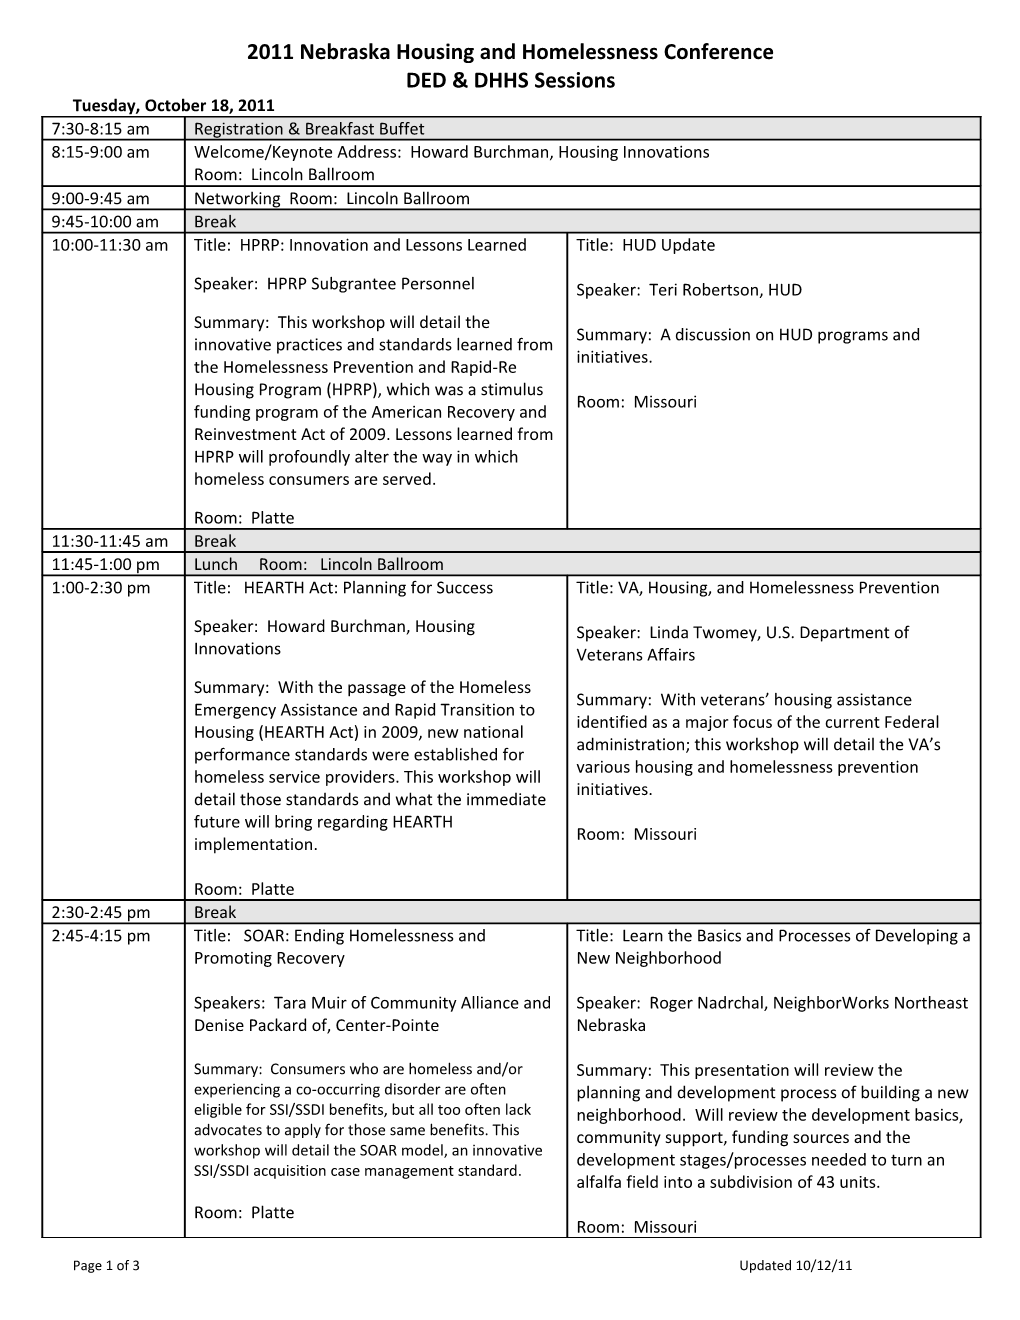 2011 DED & HHS Agenda